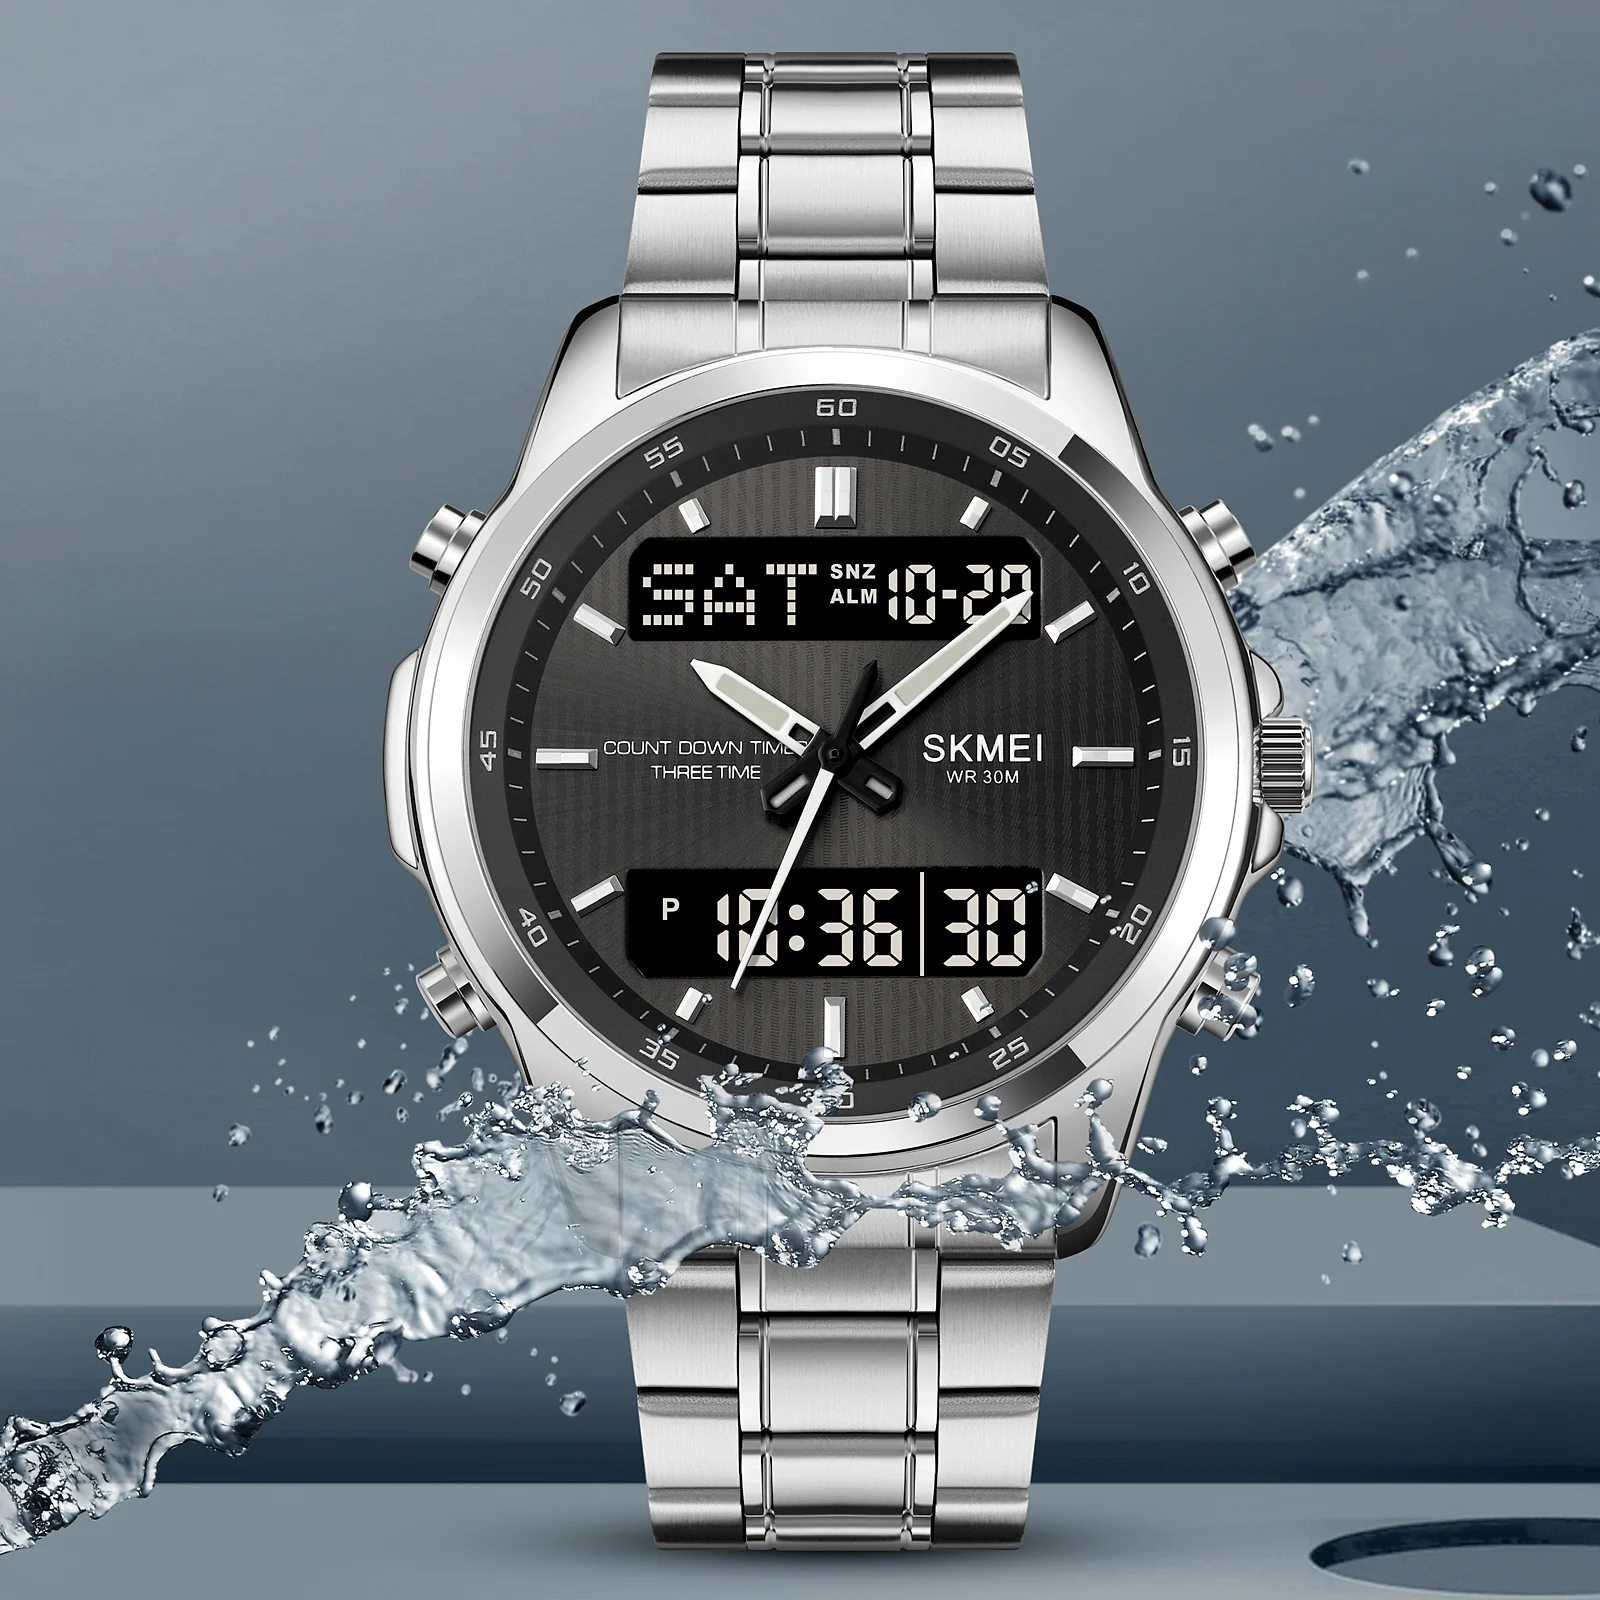 

Часы наручные Skmei мужские с подсветкой, модные спортивные водонепроницаемые с будильником, цифровые с таймером обратного отсчета и 3 часовыми поясами, 2049